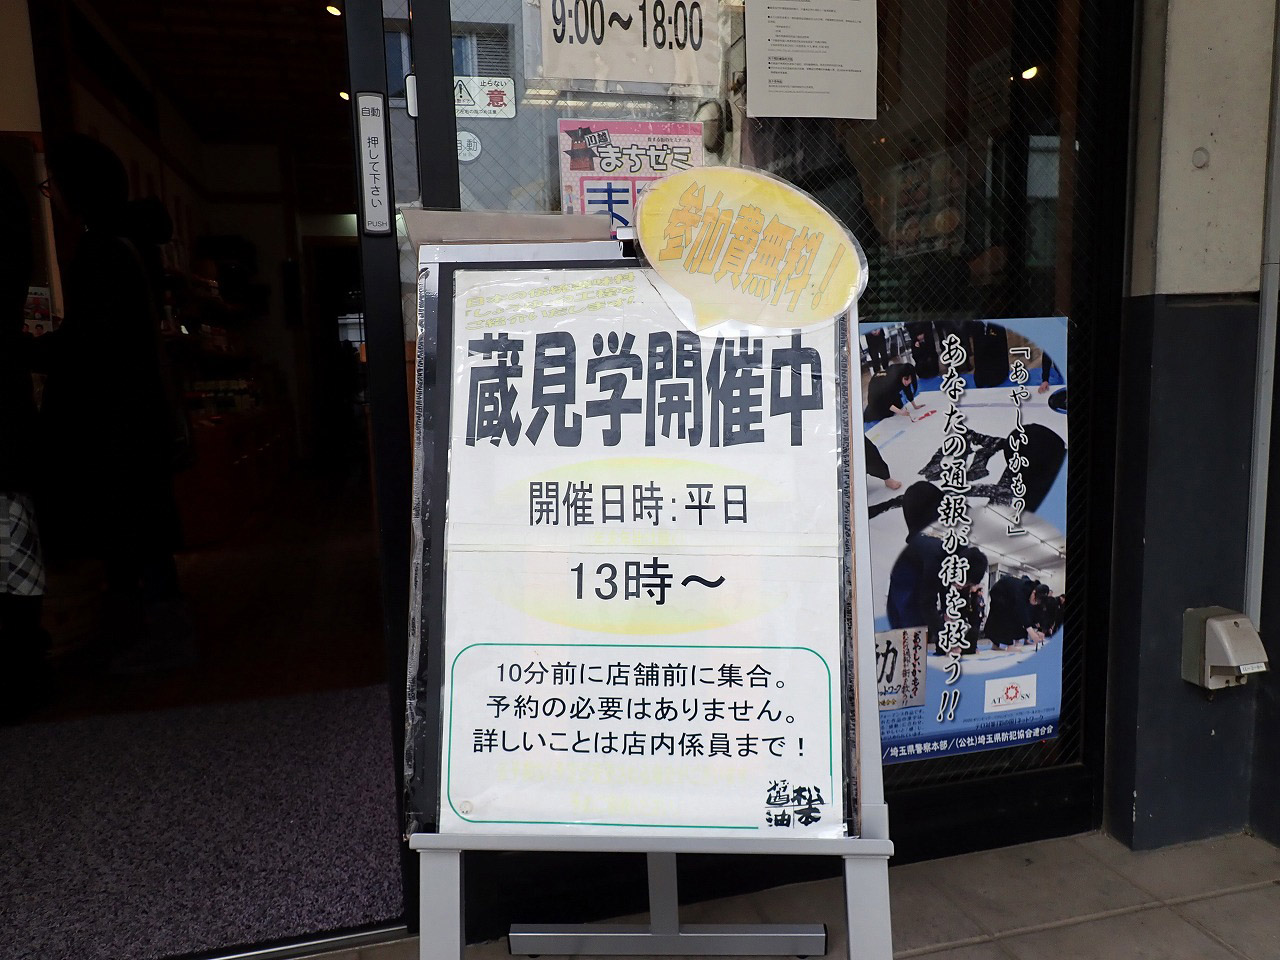 『じゅん散歩』で紹介された『松本醤油商店』の蔵見学の案内